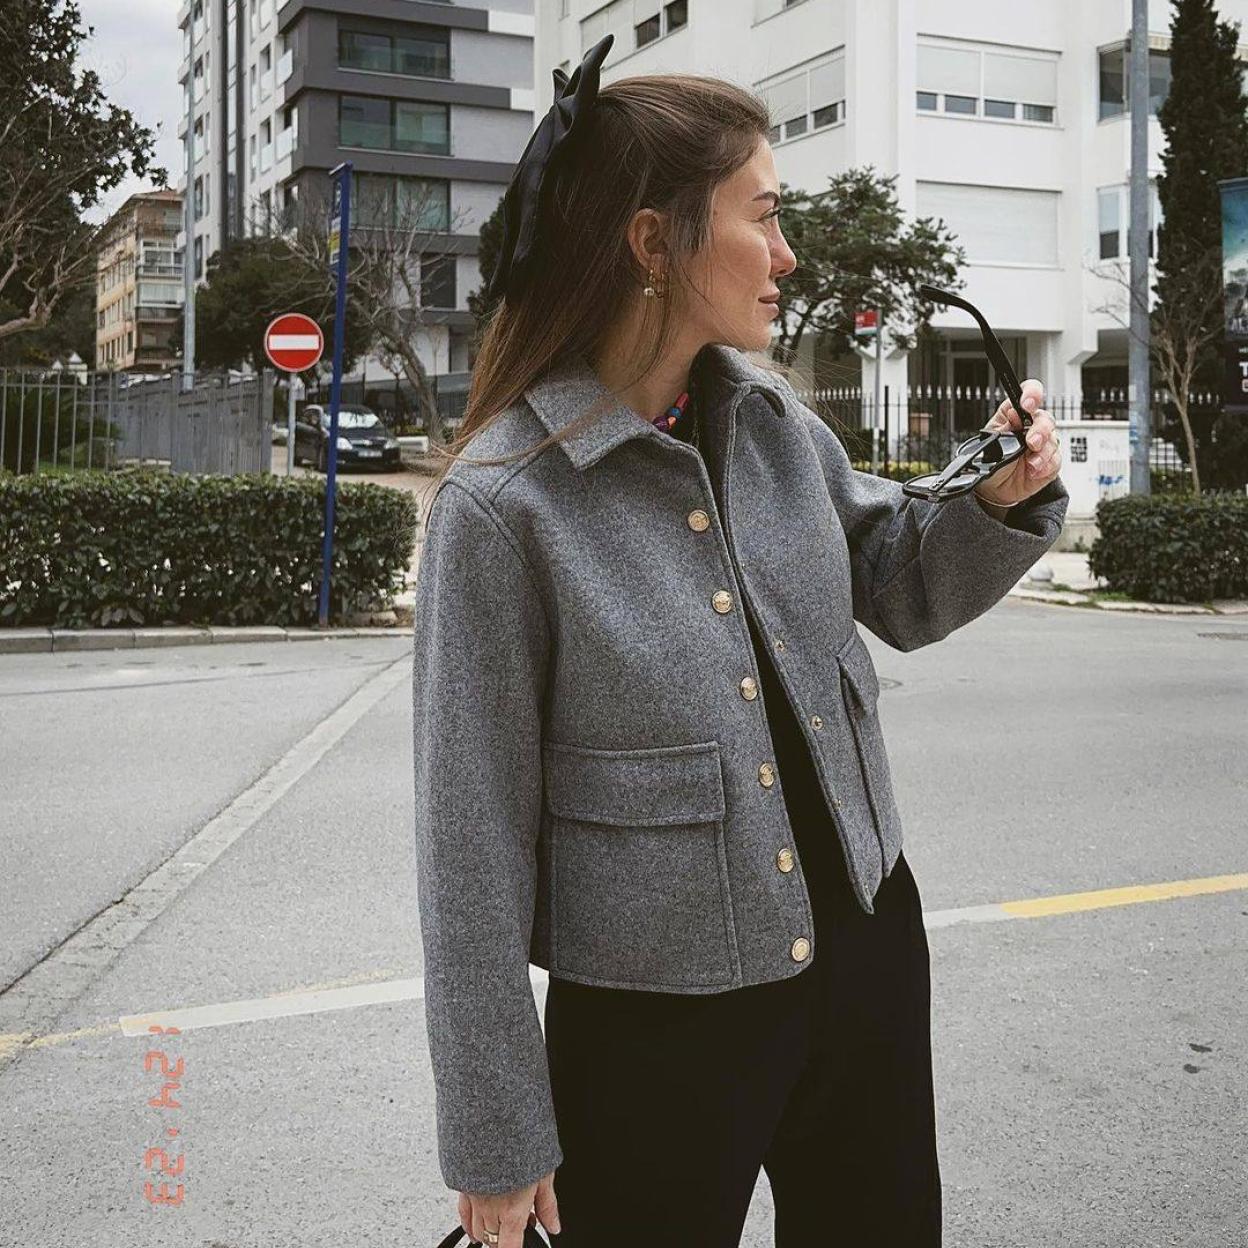 MODA: Esta es la chaqueta superventas de nueva colección que ha arrasado en  Instagram por lo ponible y elegante que es | Mujer Hoy